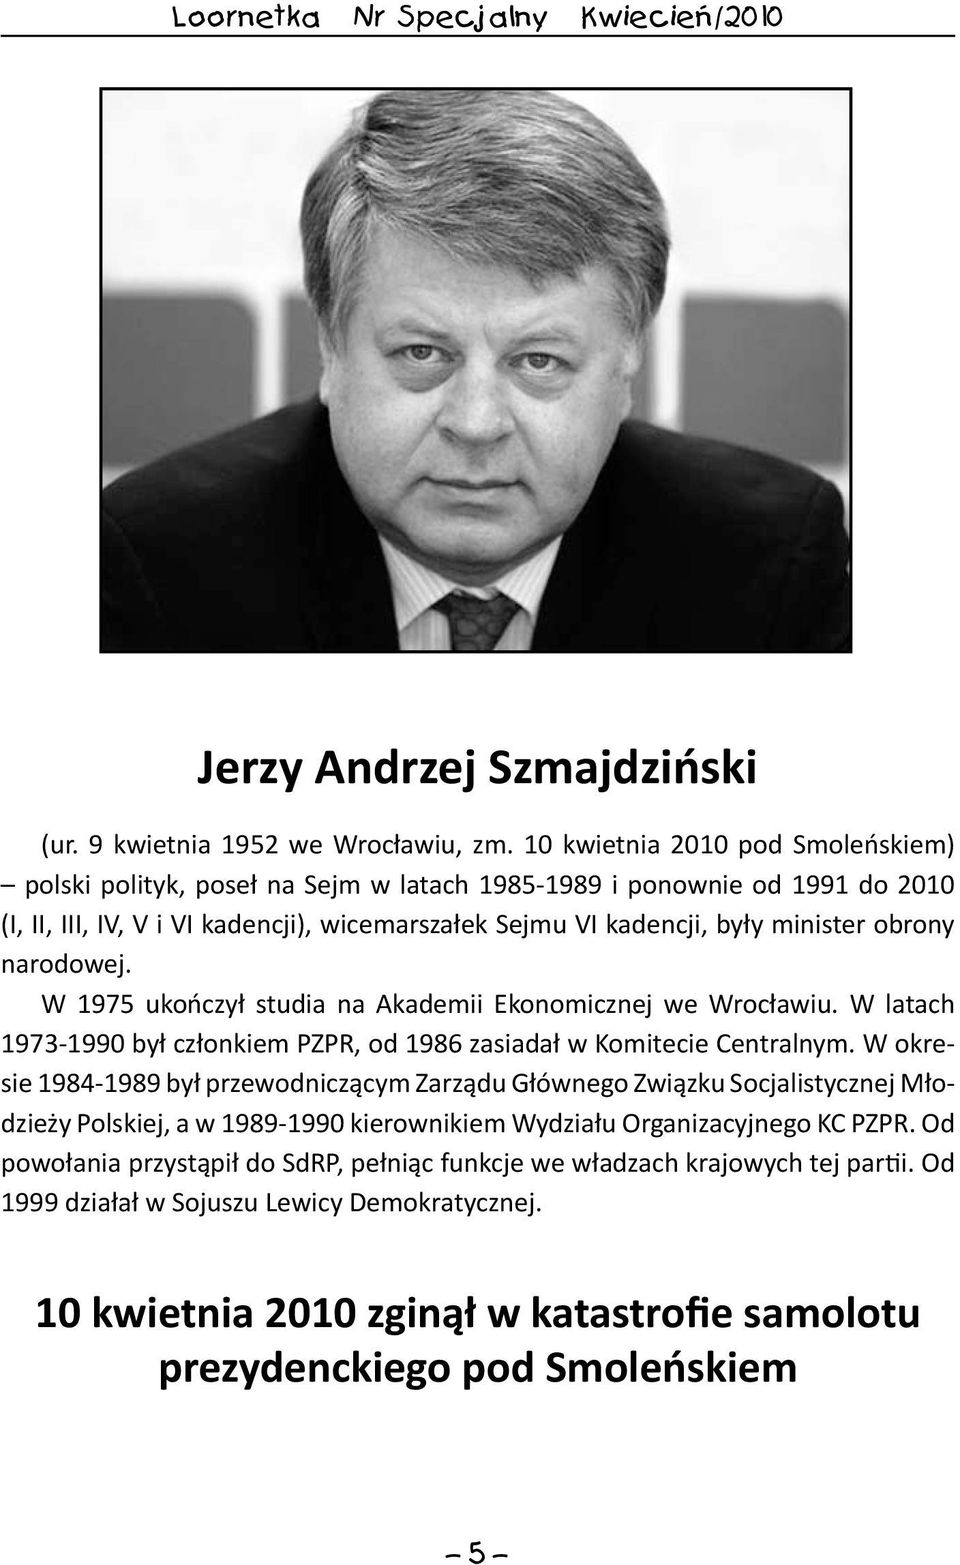 obrony narodowej. W 1975 ukończył studia na Akademii Ekonomicznej we Wrocławiu. W latach 1973-1990 był członkiem PZPR, od 1986 zasiadał w Komitecie Centralnym.